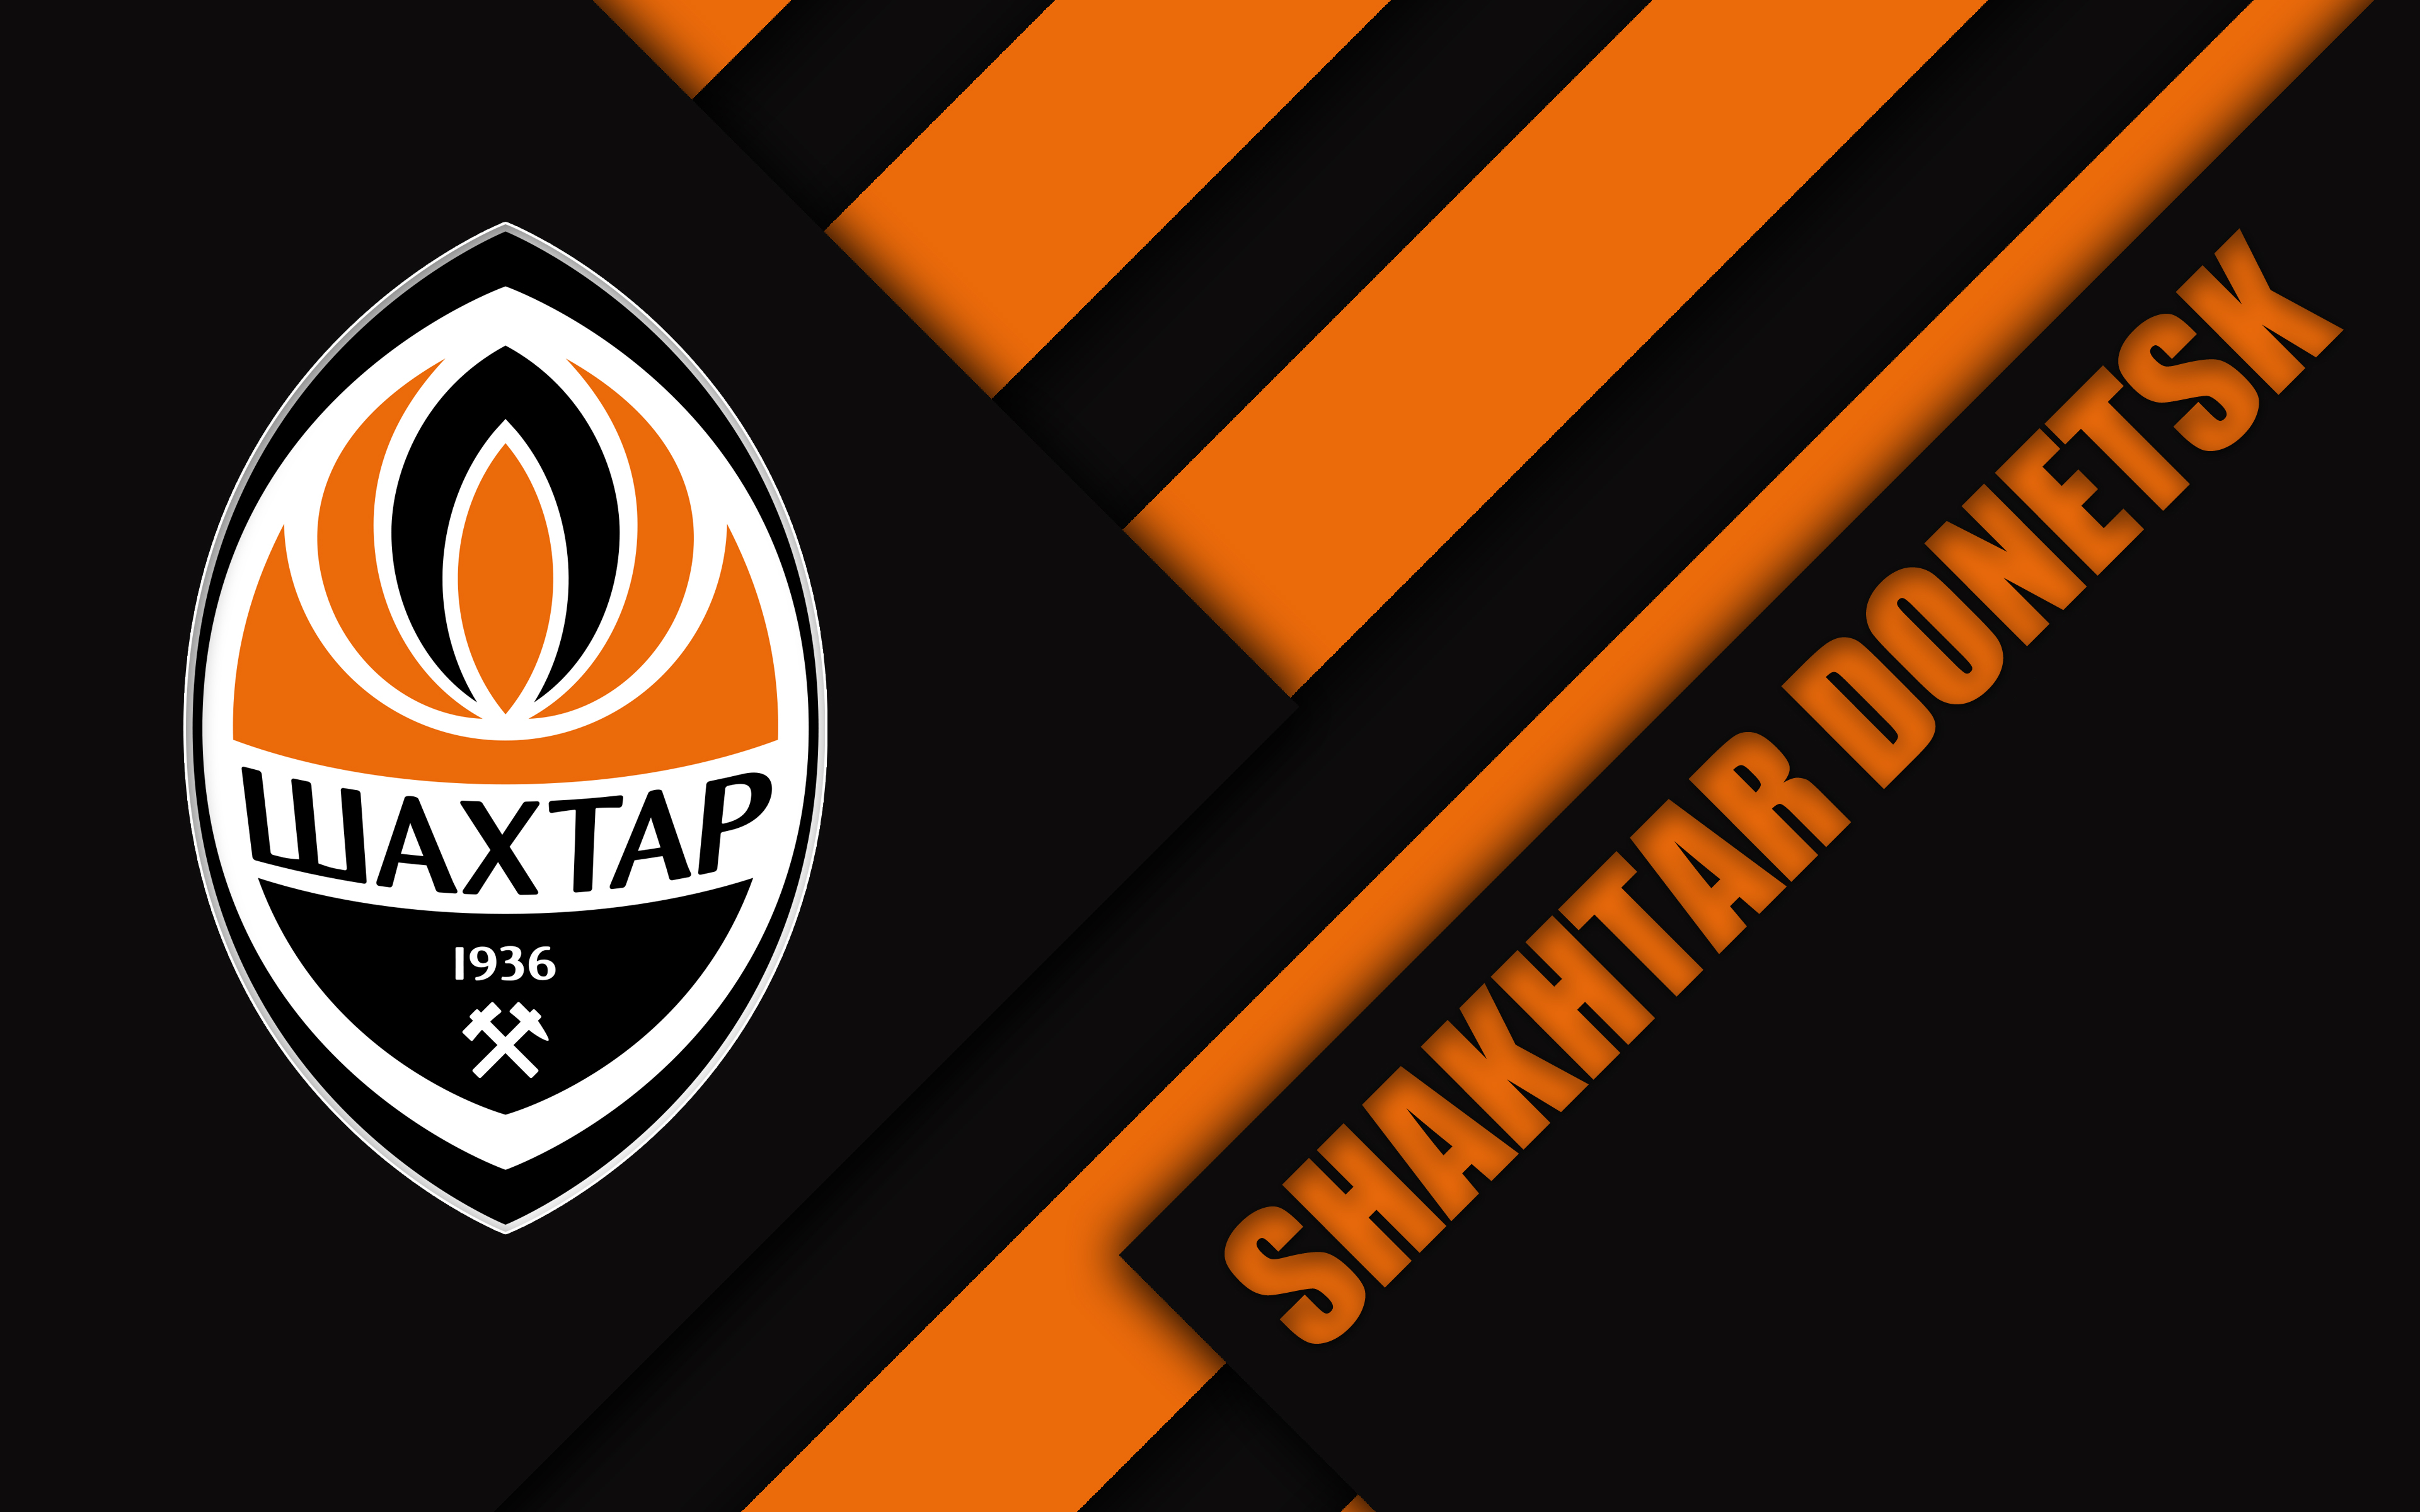 Logo, FC Shakhtar Donetsk, Emblem, Soccer wallpaper and background